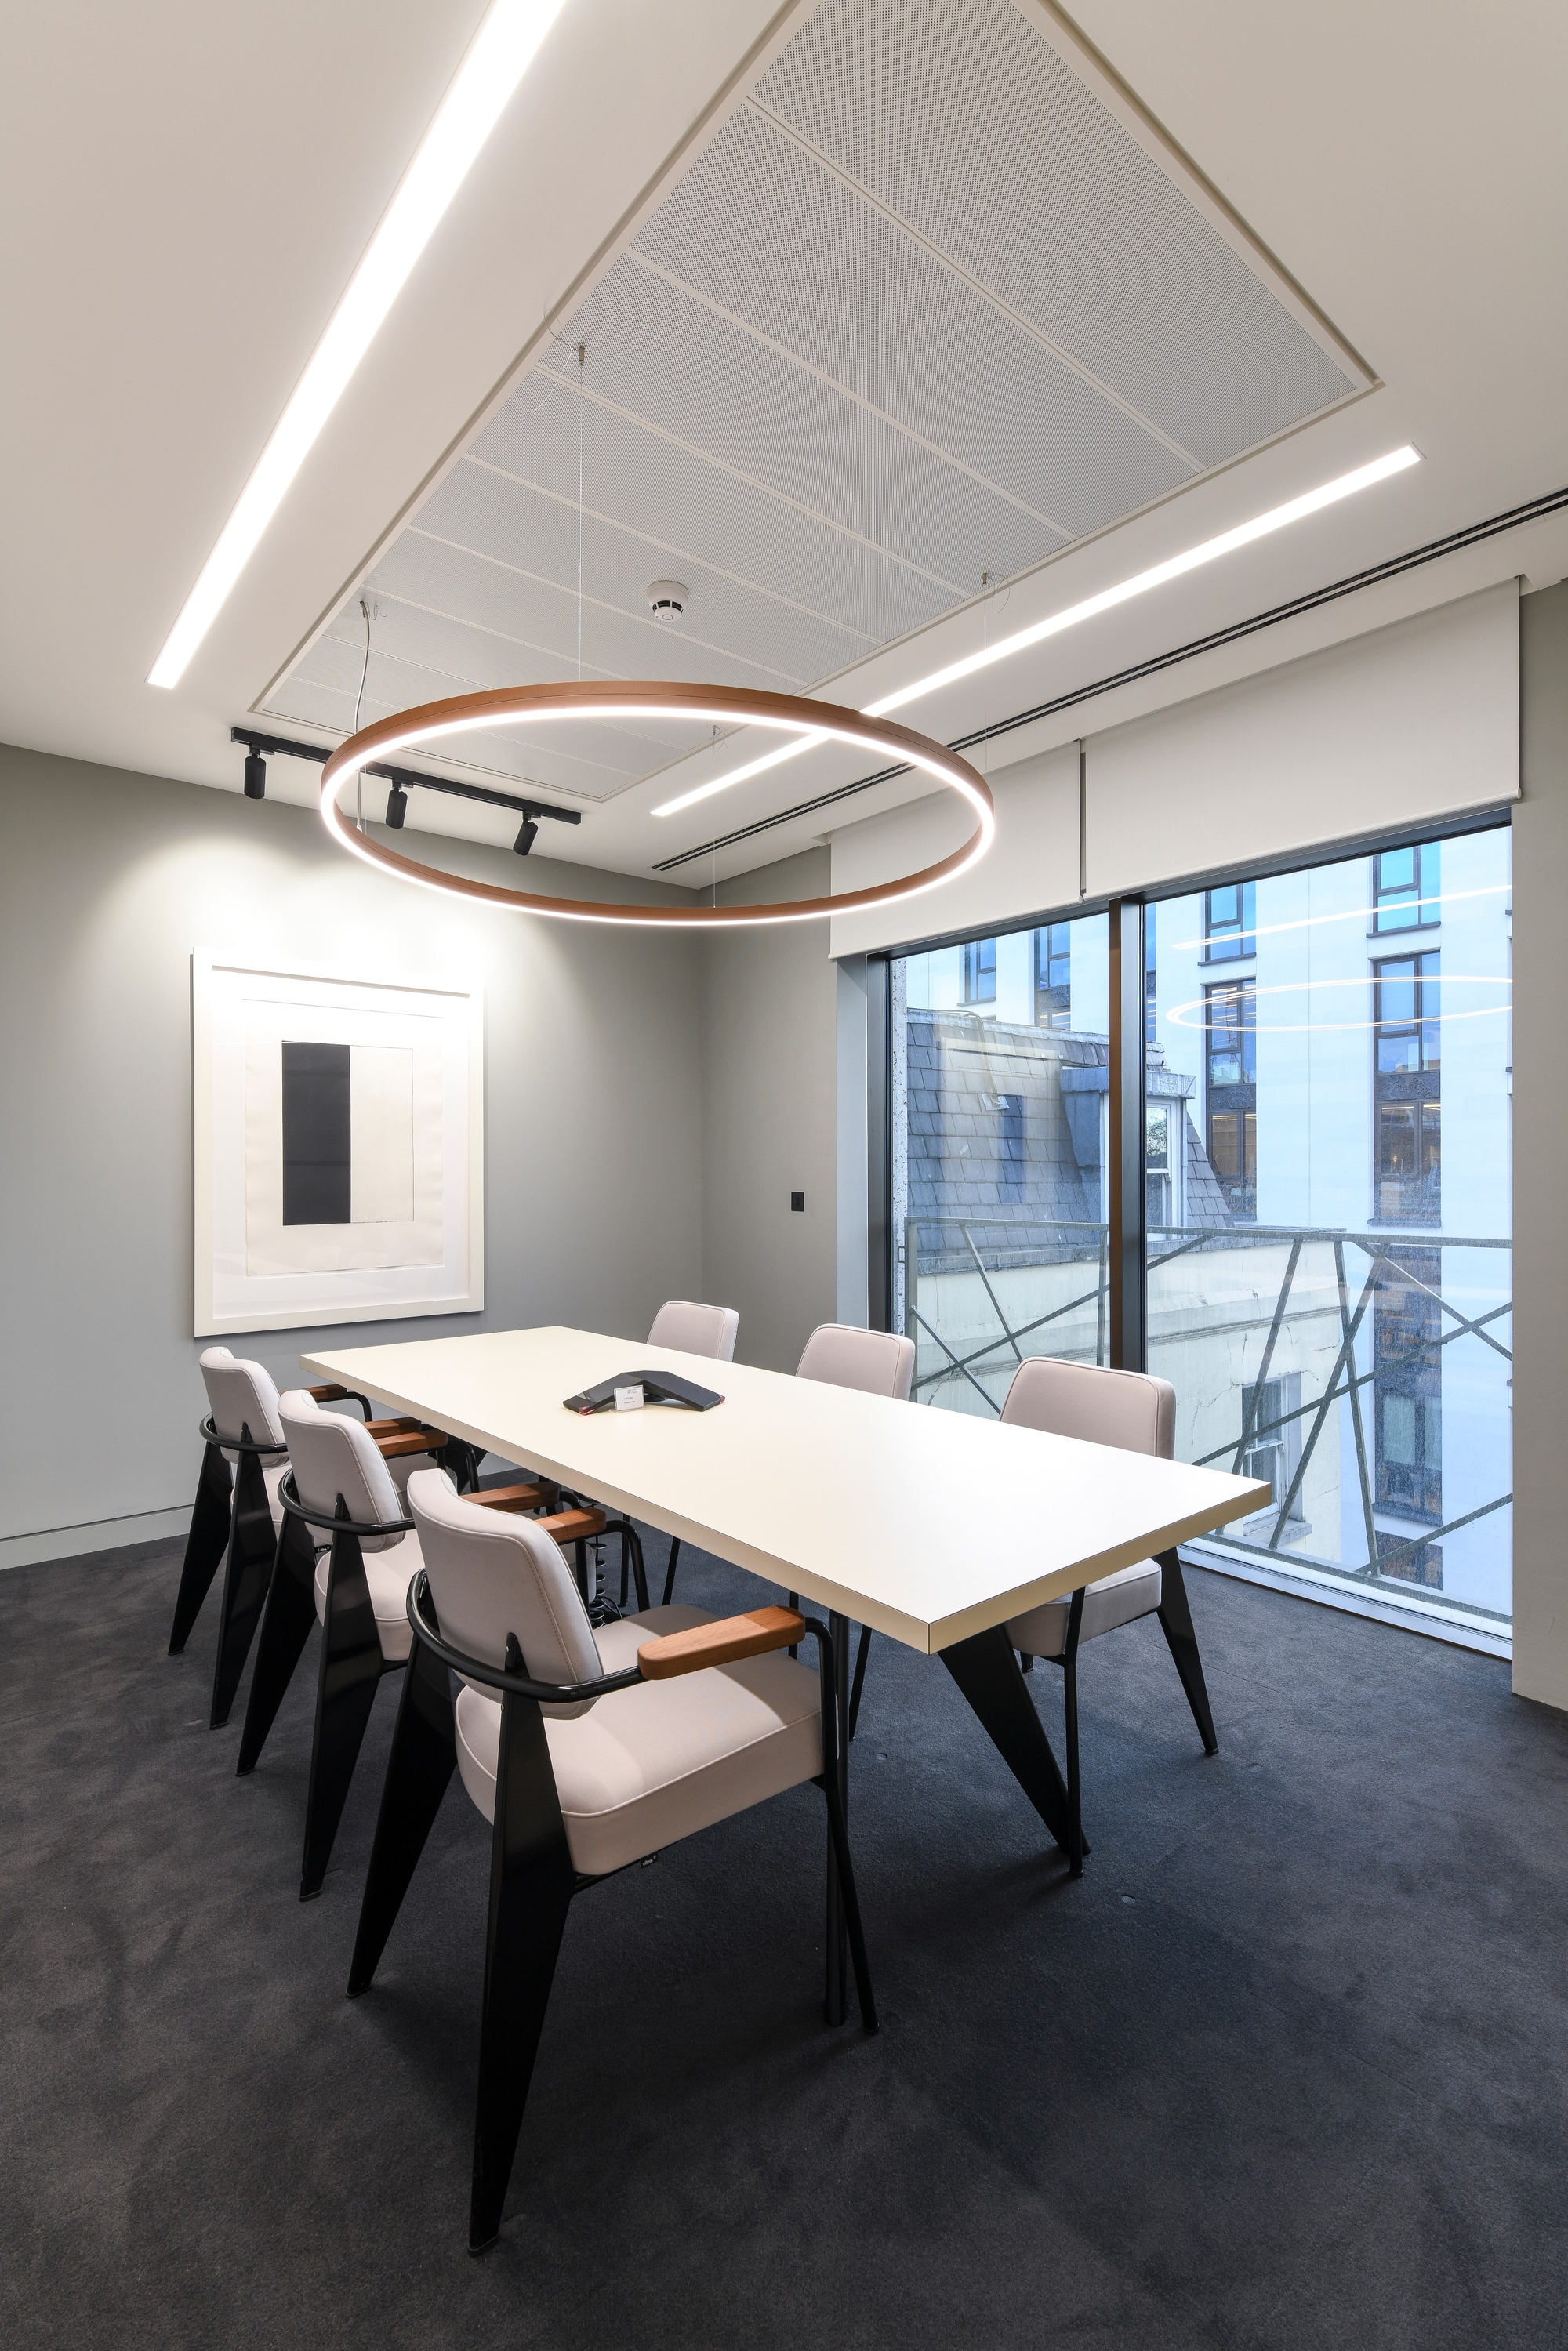 图片[4]|保密私募股权公司办公室——伦敦|ART-Arrakis | 建筑室内设计的创新与灵感